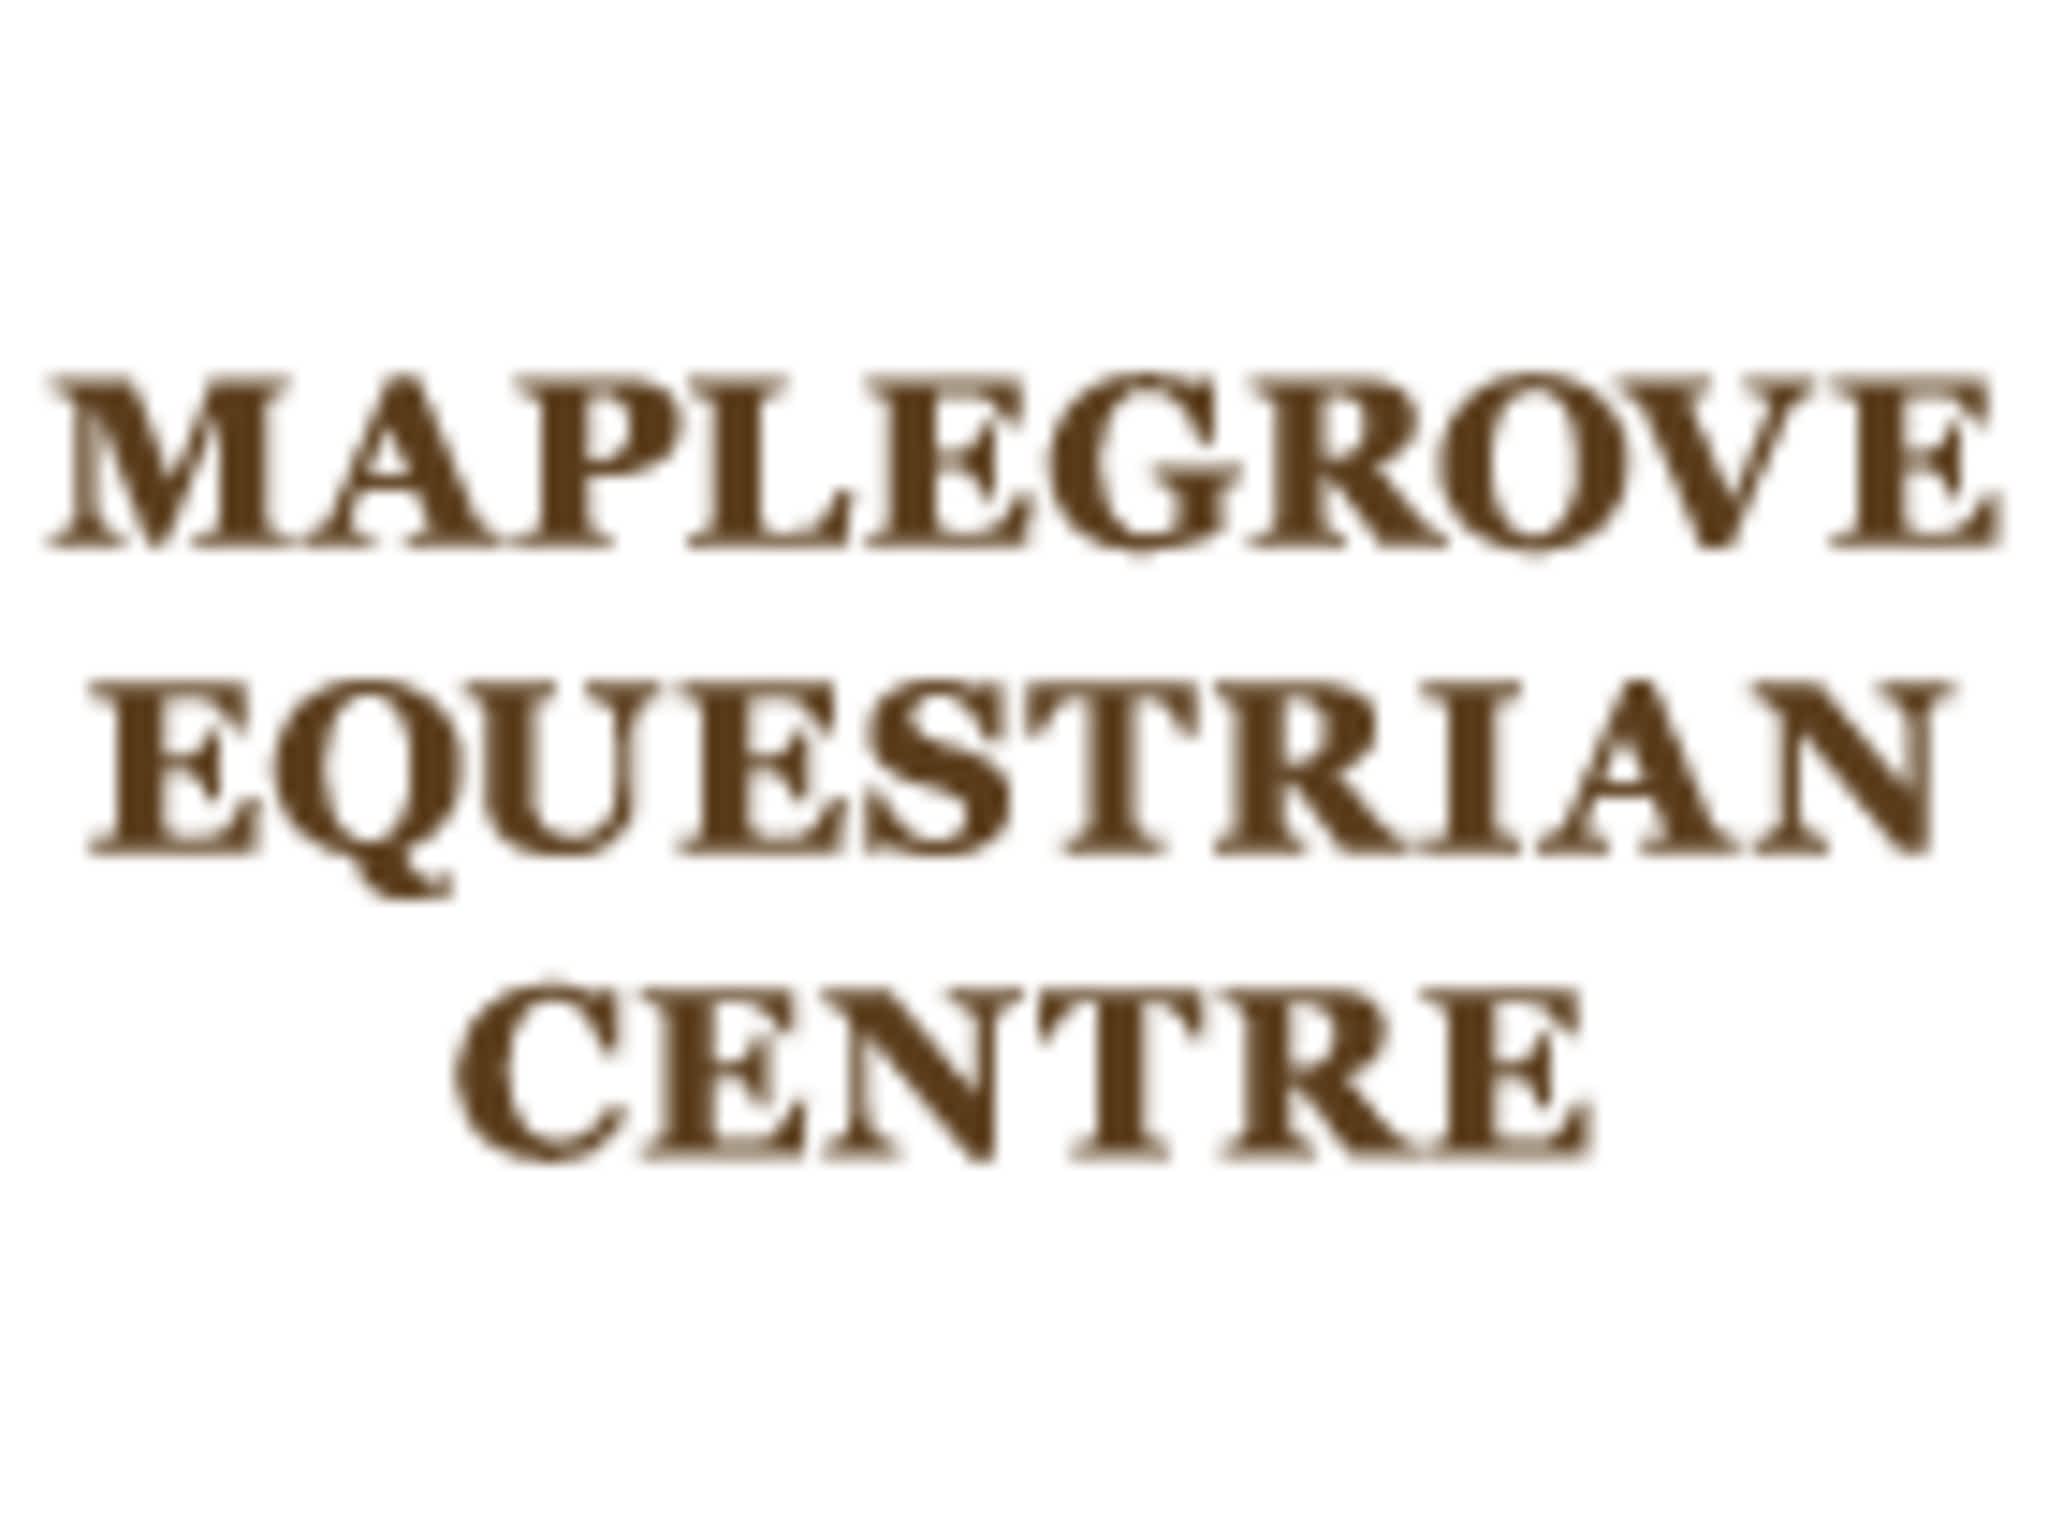 photo Maplegrove Equestrian Centre